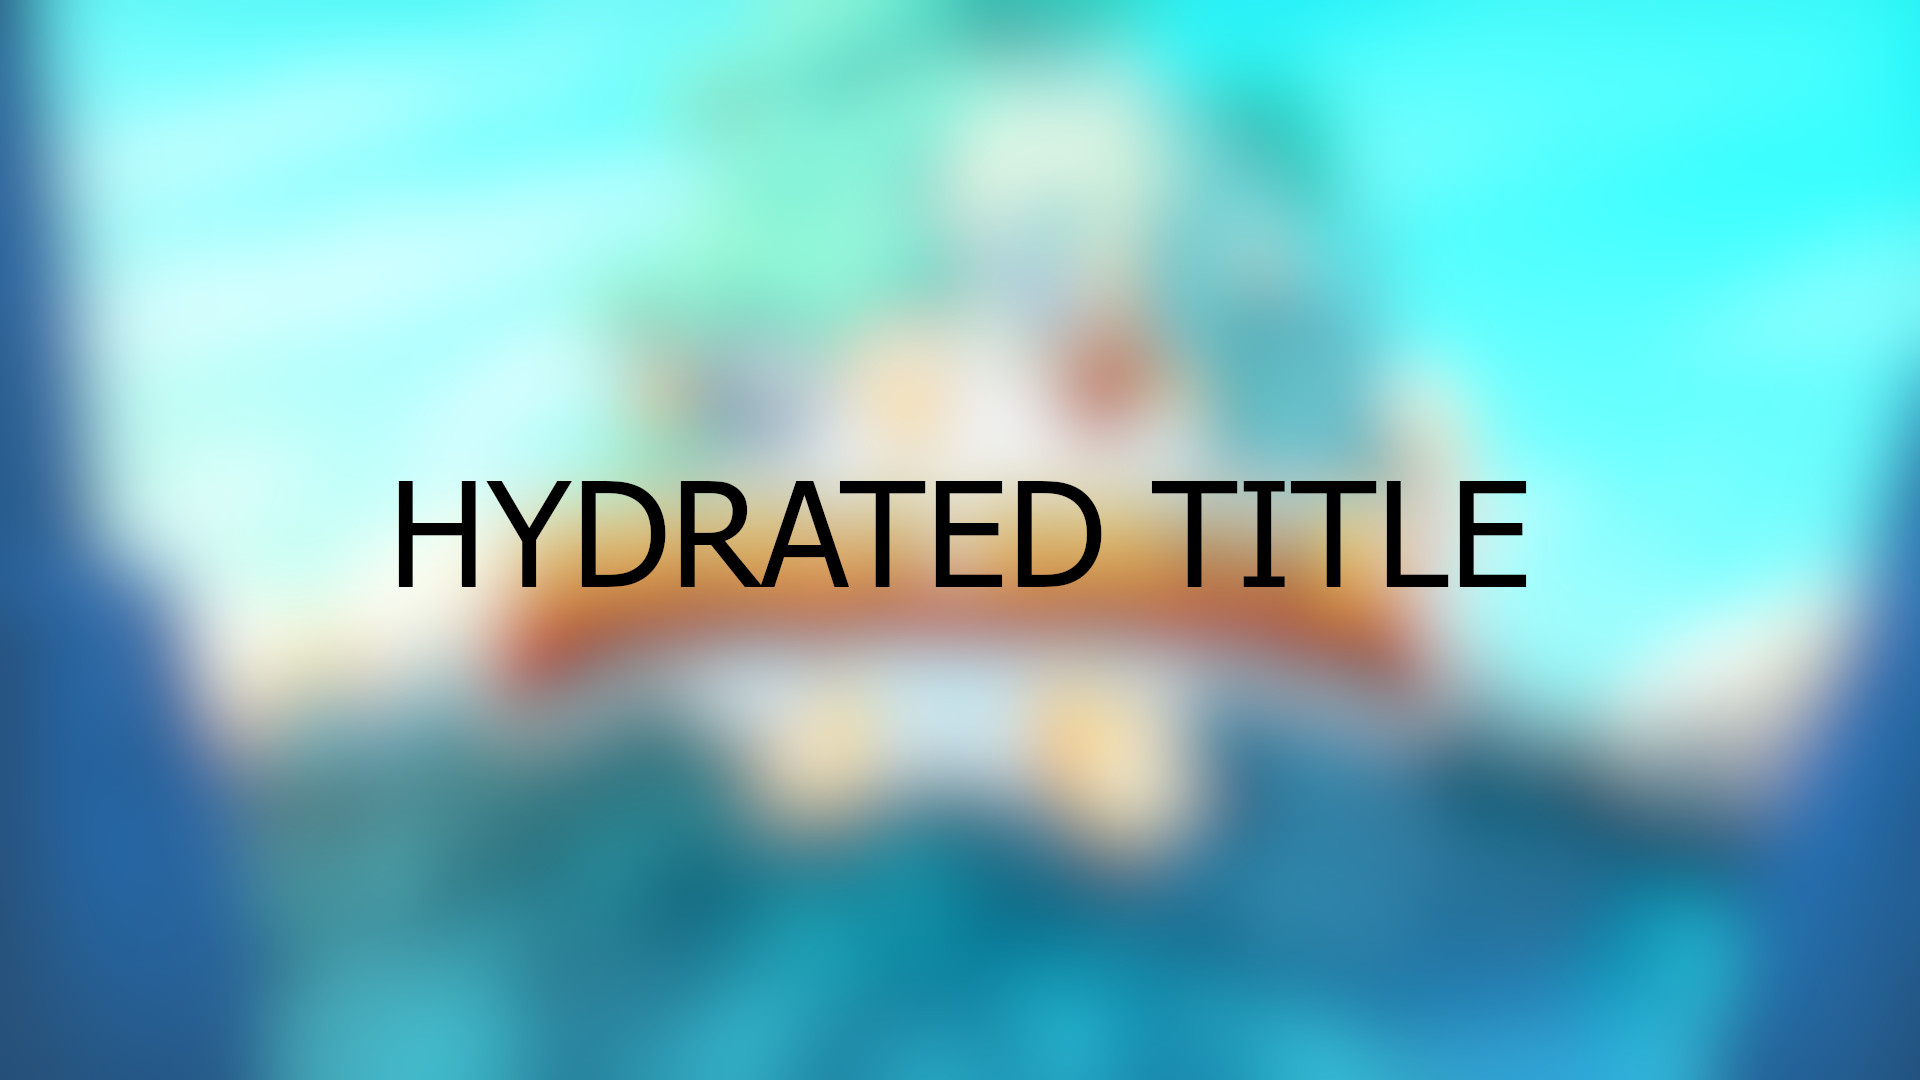 Brawlhalla - Hydrated Title DLC CD Key 0.29$